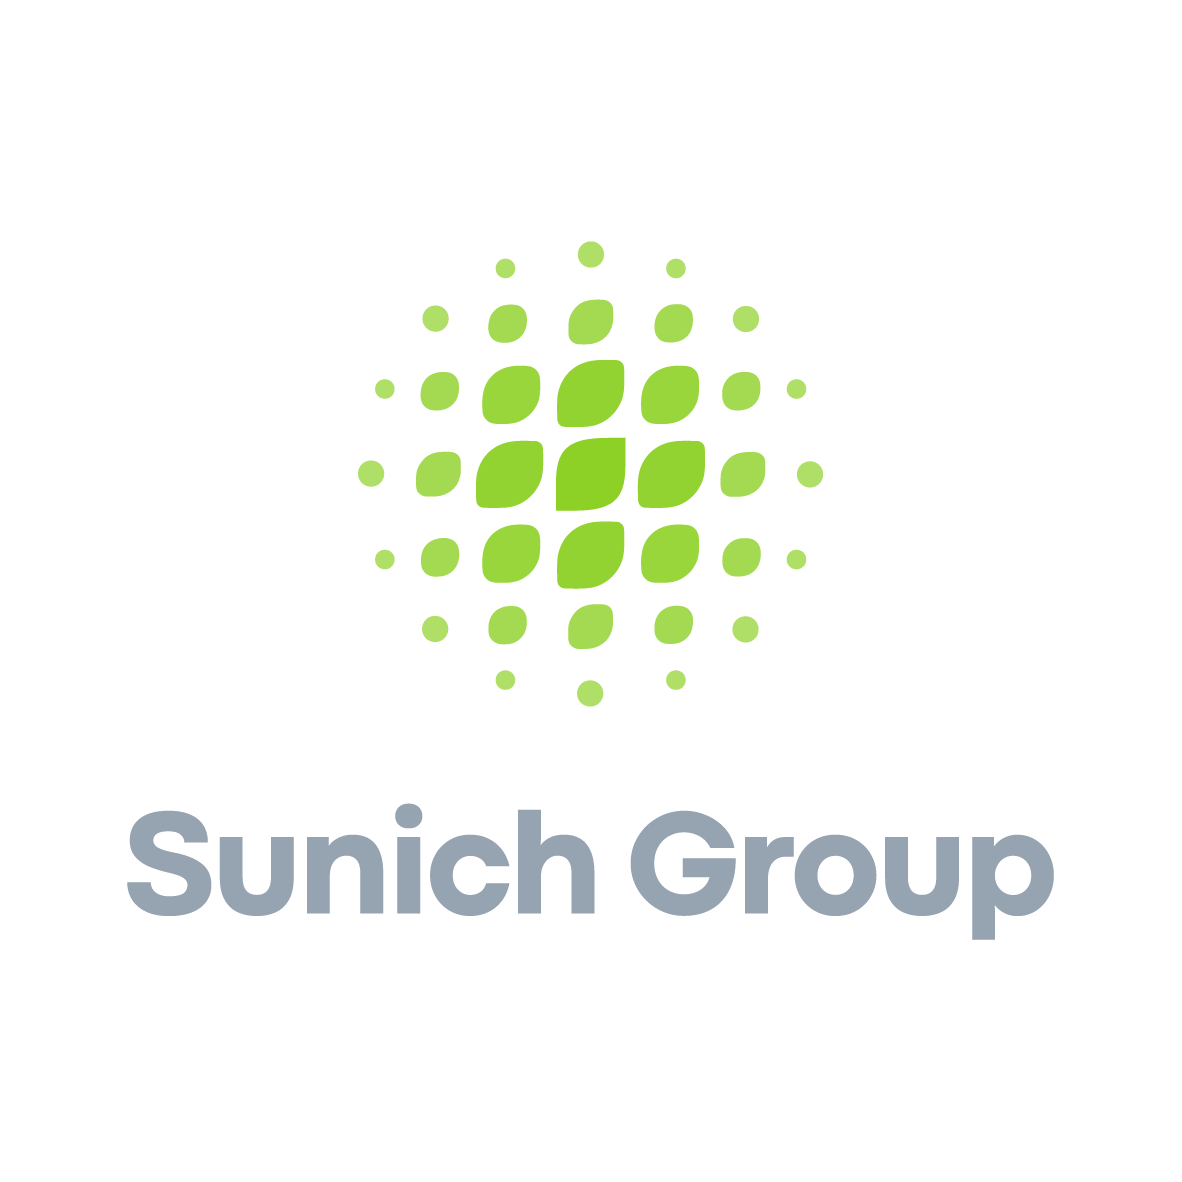 مدیر شعبه | Branch Manager - گروه شرکت های سن ایچ | Sunich Group Of Companies